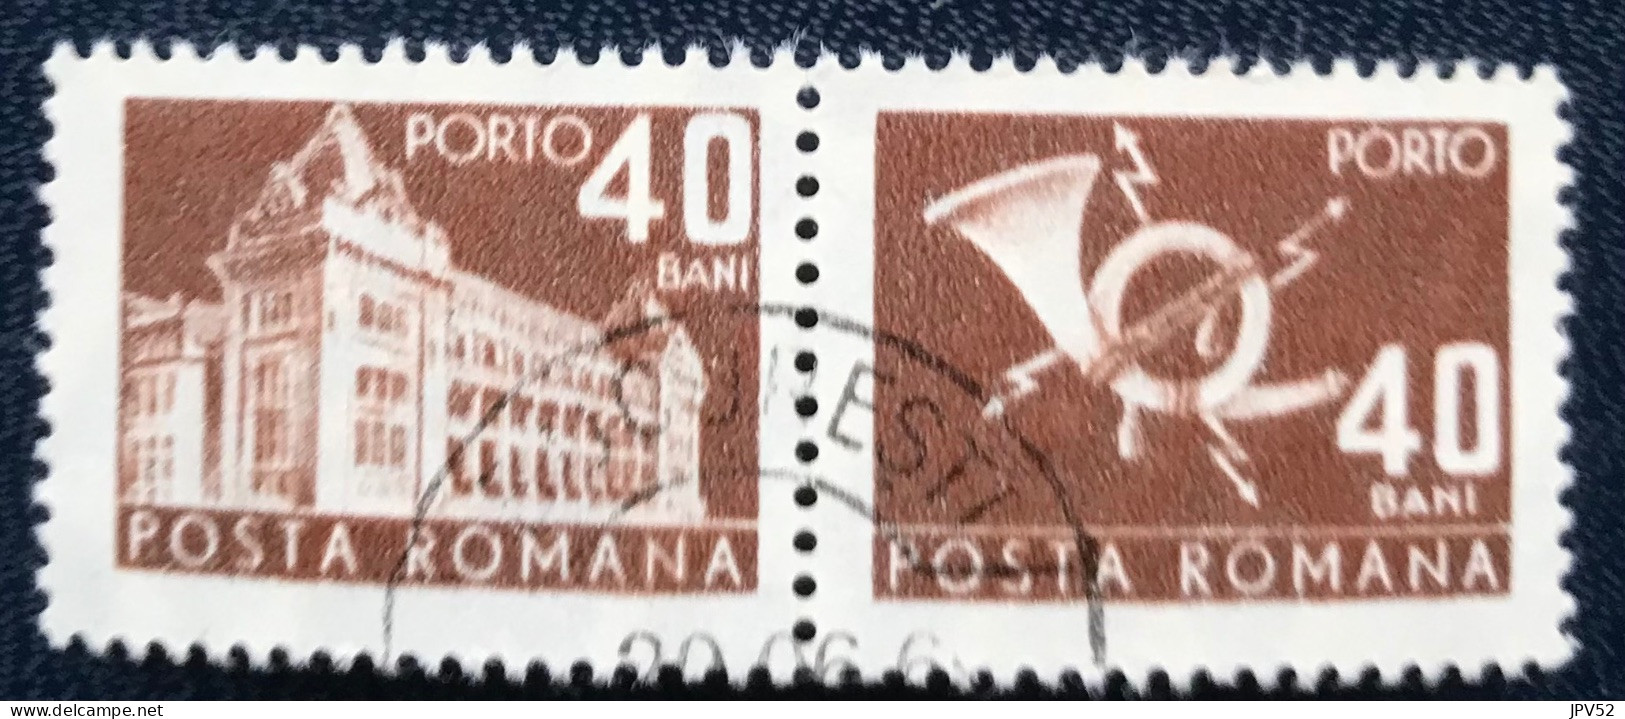 Romana - Roemenië - C14/54 - 1967 - (°)used - Michel 111 - Postkantoor & Posthoorn & Bliksem - Strafport